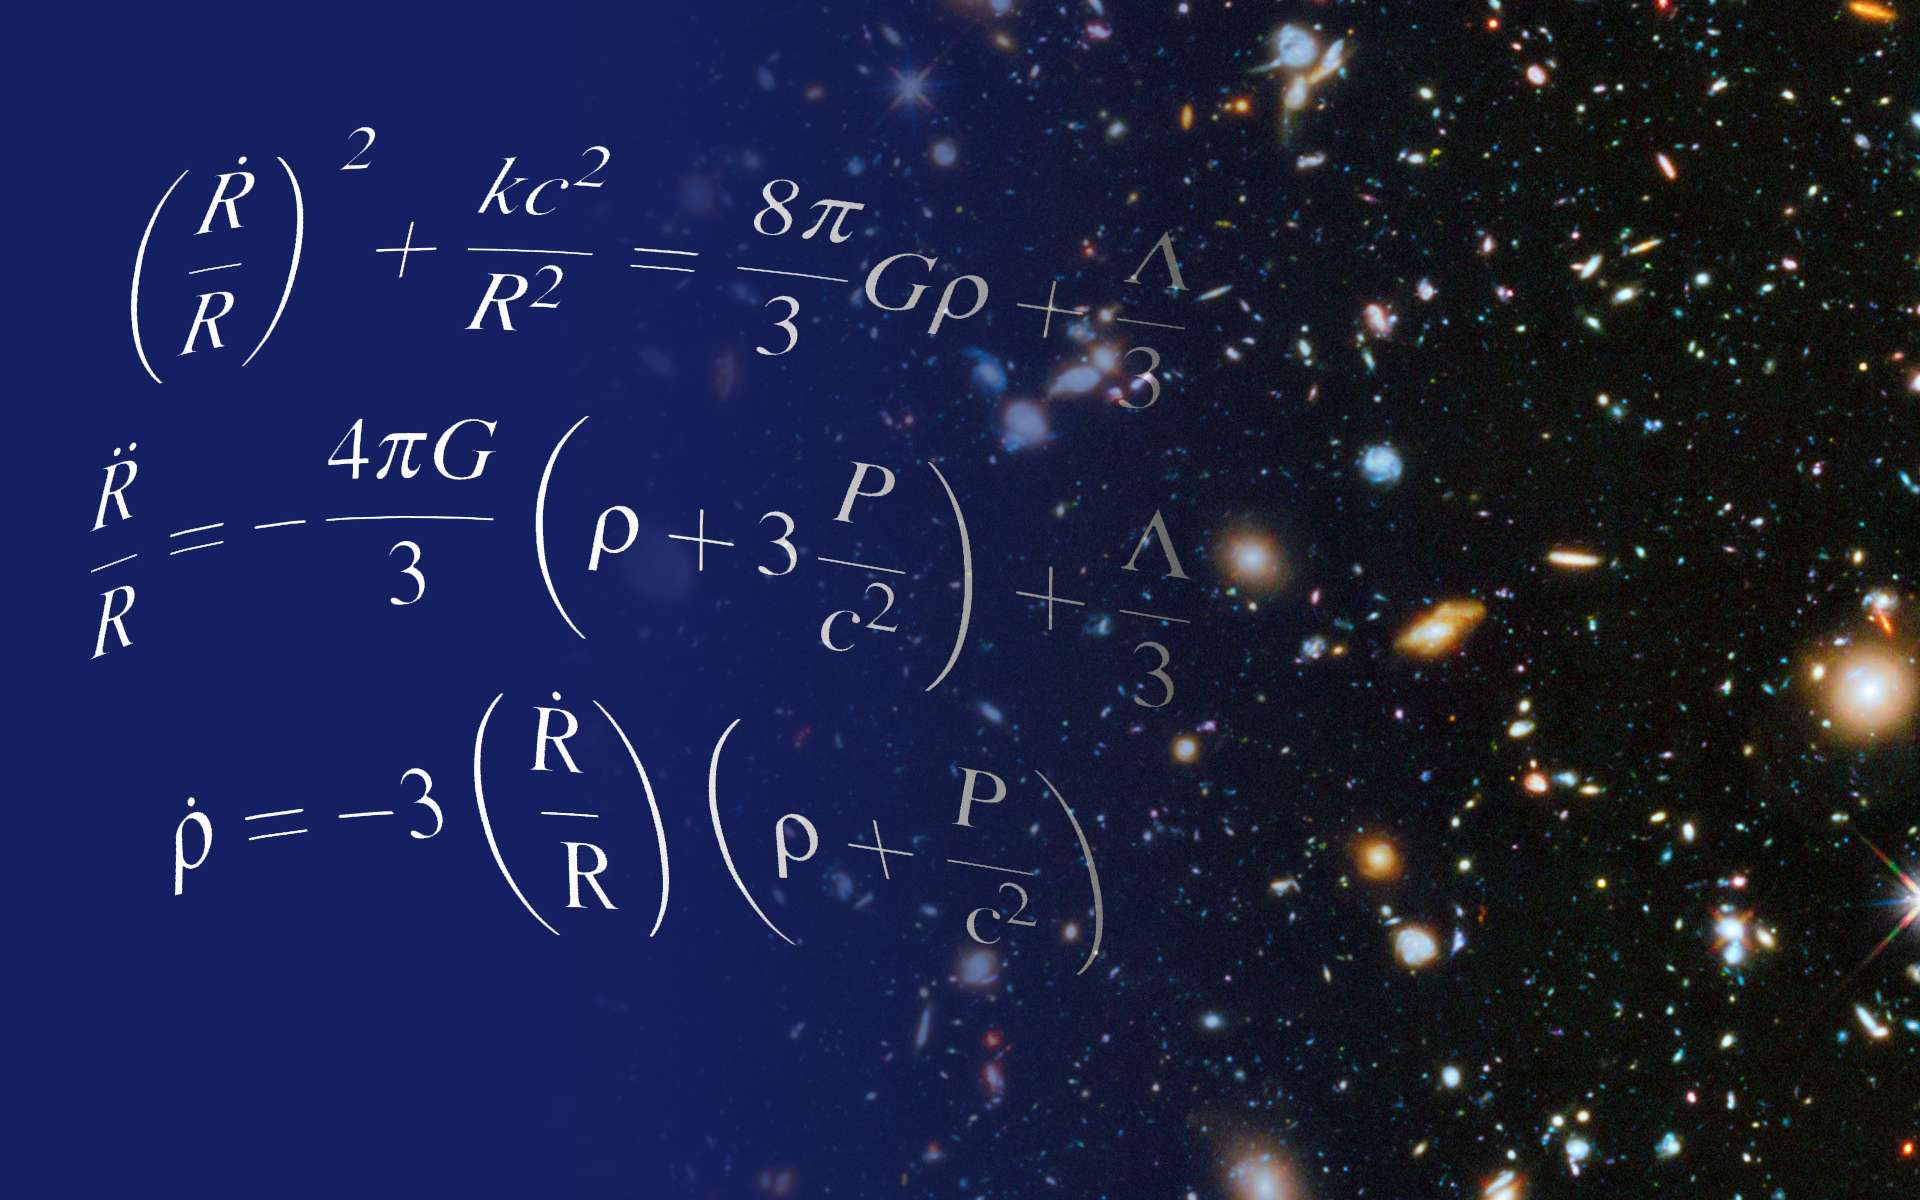 Les équations d'Einstein pour la cosmologie du modèle standard contiennent un terme décrivant une énergie particulière dans l'univers. L'étude des galaxies a montré que ce terme existait bien, il s'agit de l'énergie noire, qui accélère l'expansion du cosmos depuis quelques milliards d'années. © Shane L. Larson